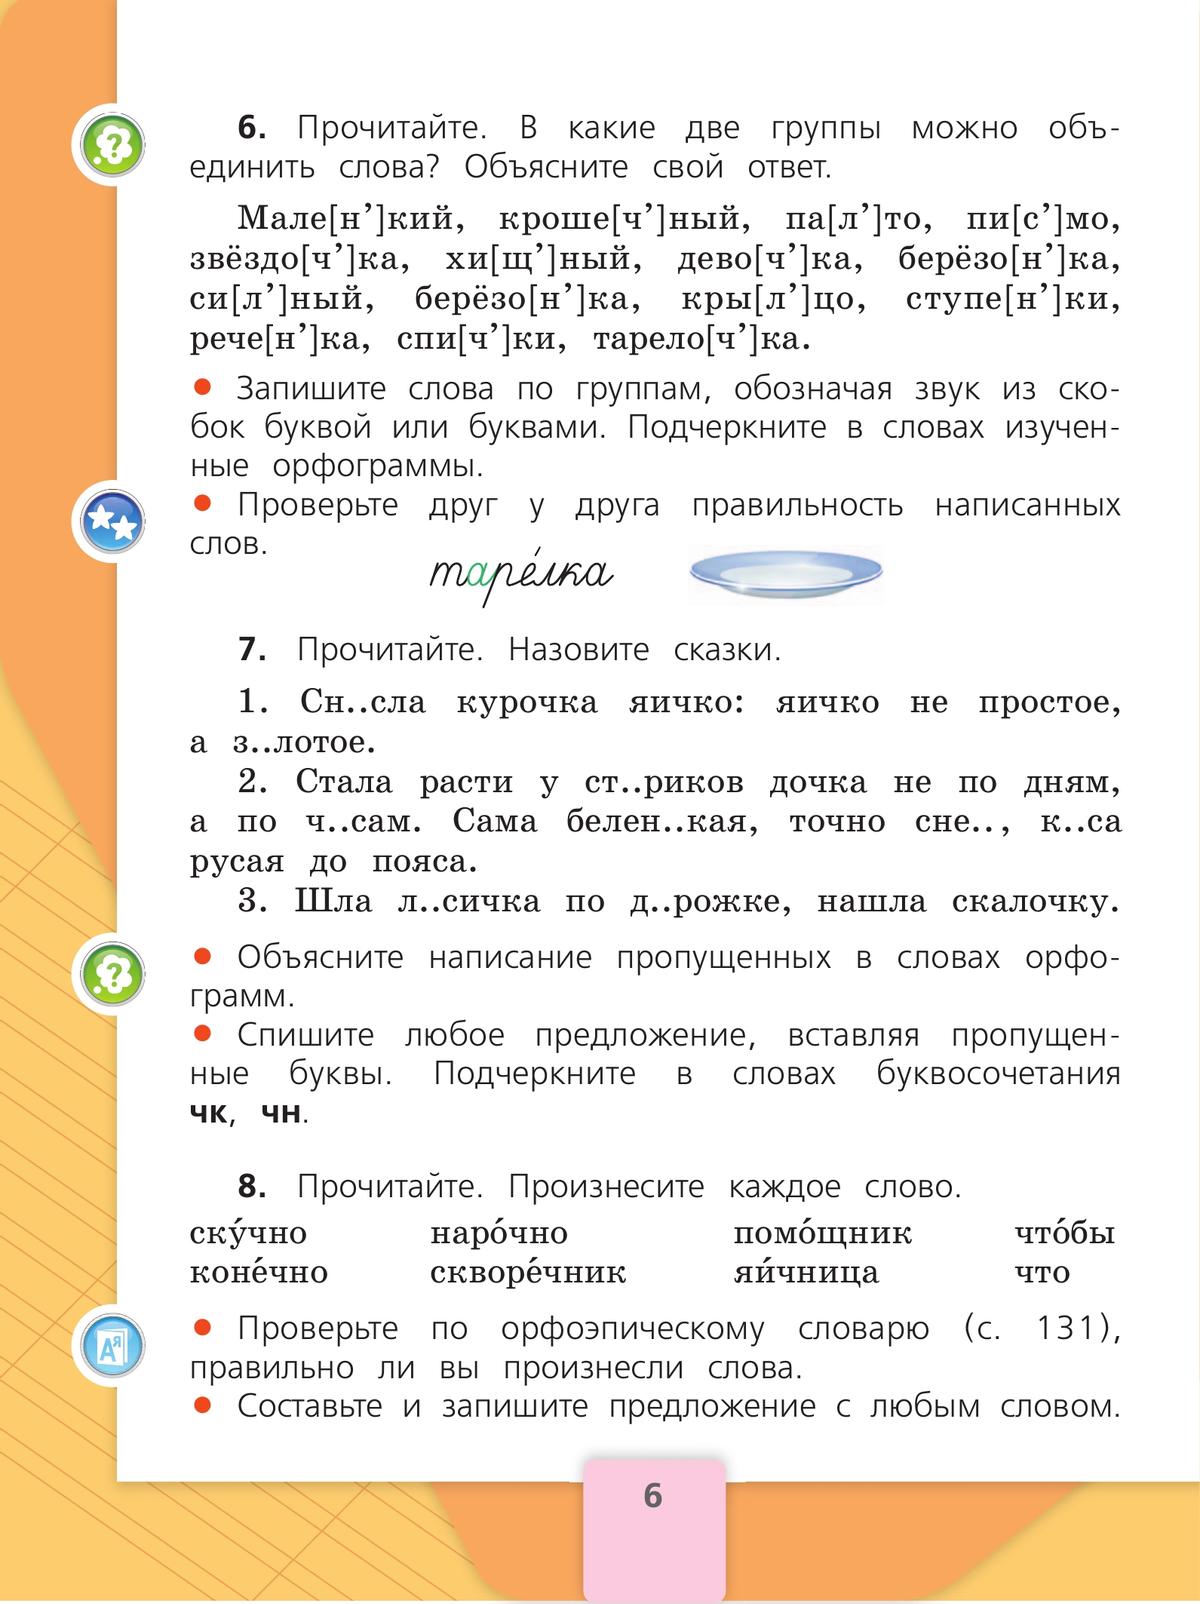 Русский язык. 2 класс. Учебник. В 2 ч. Часть 2 4